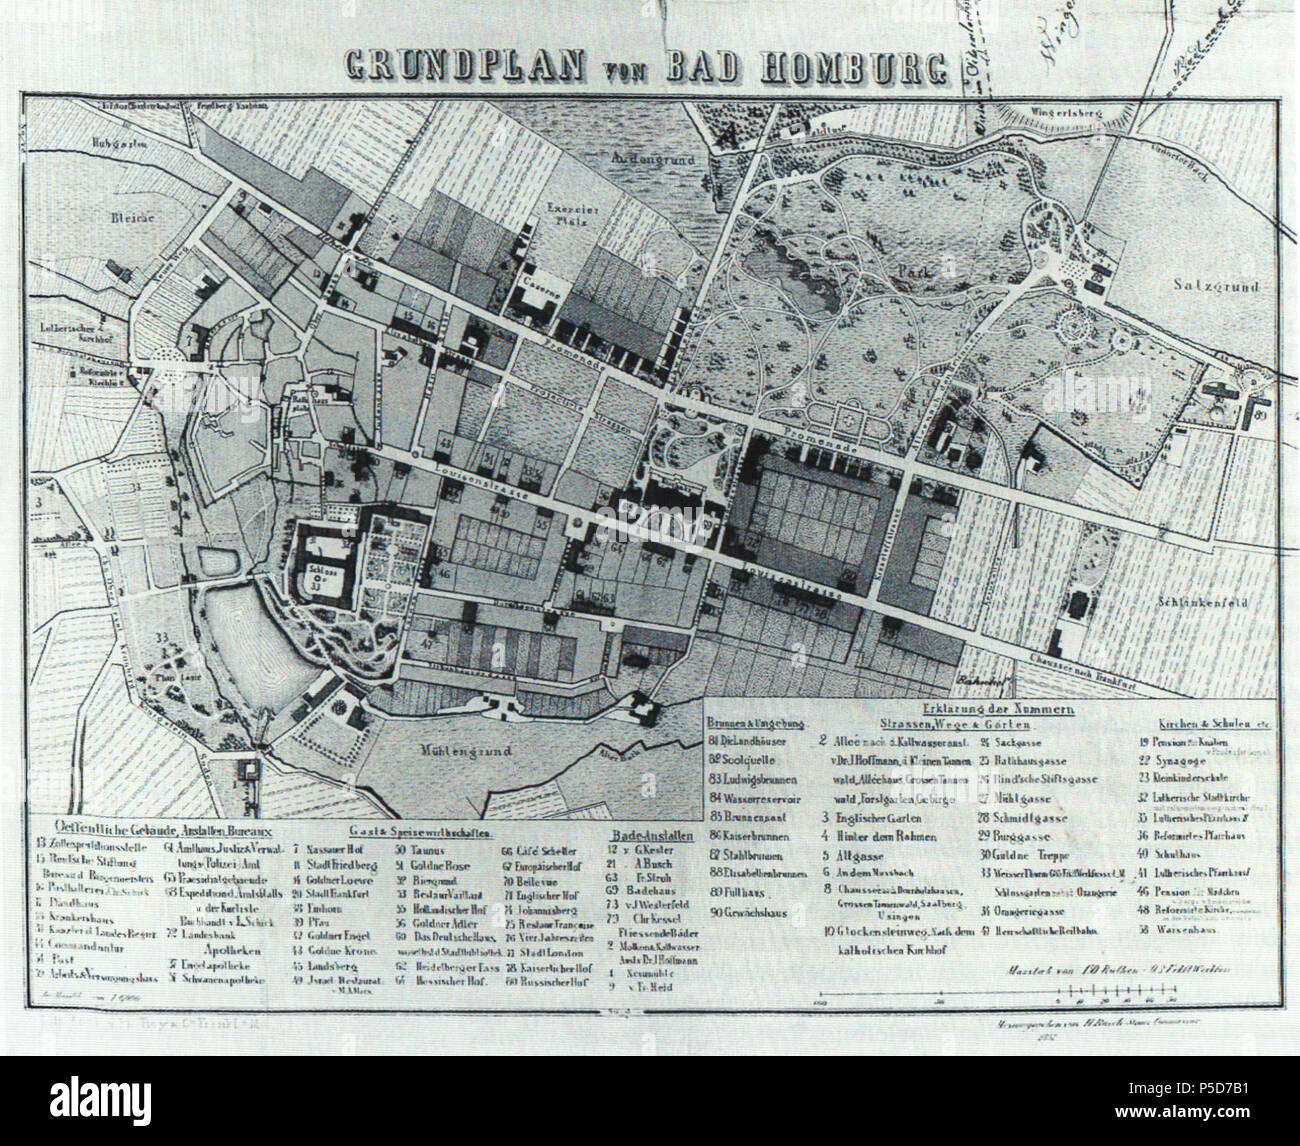 N/A. Deutsch: Bad Homburg, Stadtplan von 1857 . El 1 de junio de 2012. H. Busch, Steuer-Commionaire 161 Bad Homburg, Stadtplan von 1857 Foto de stock